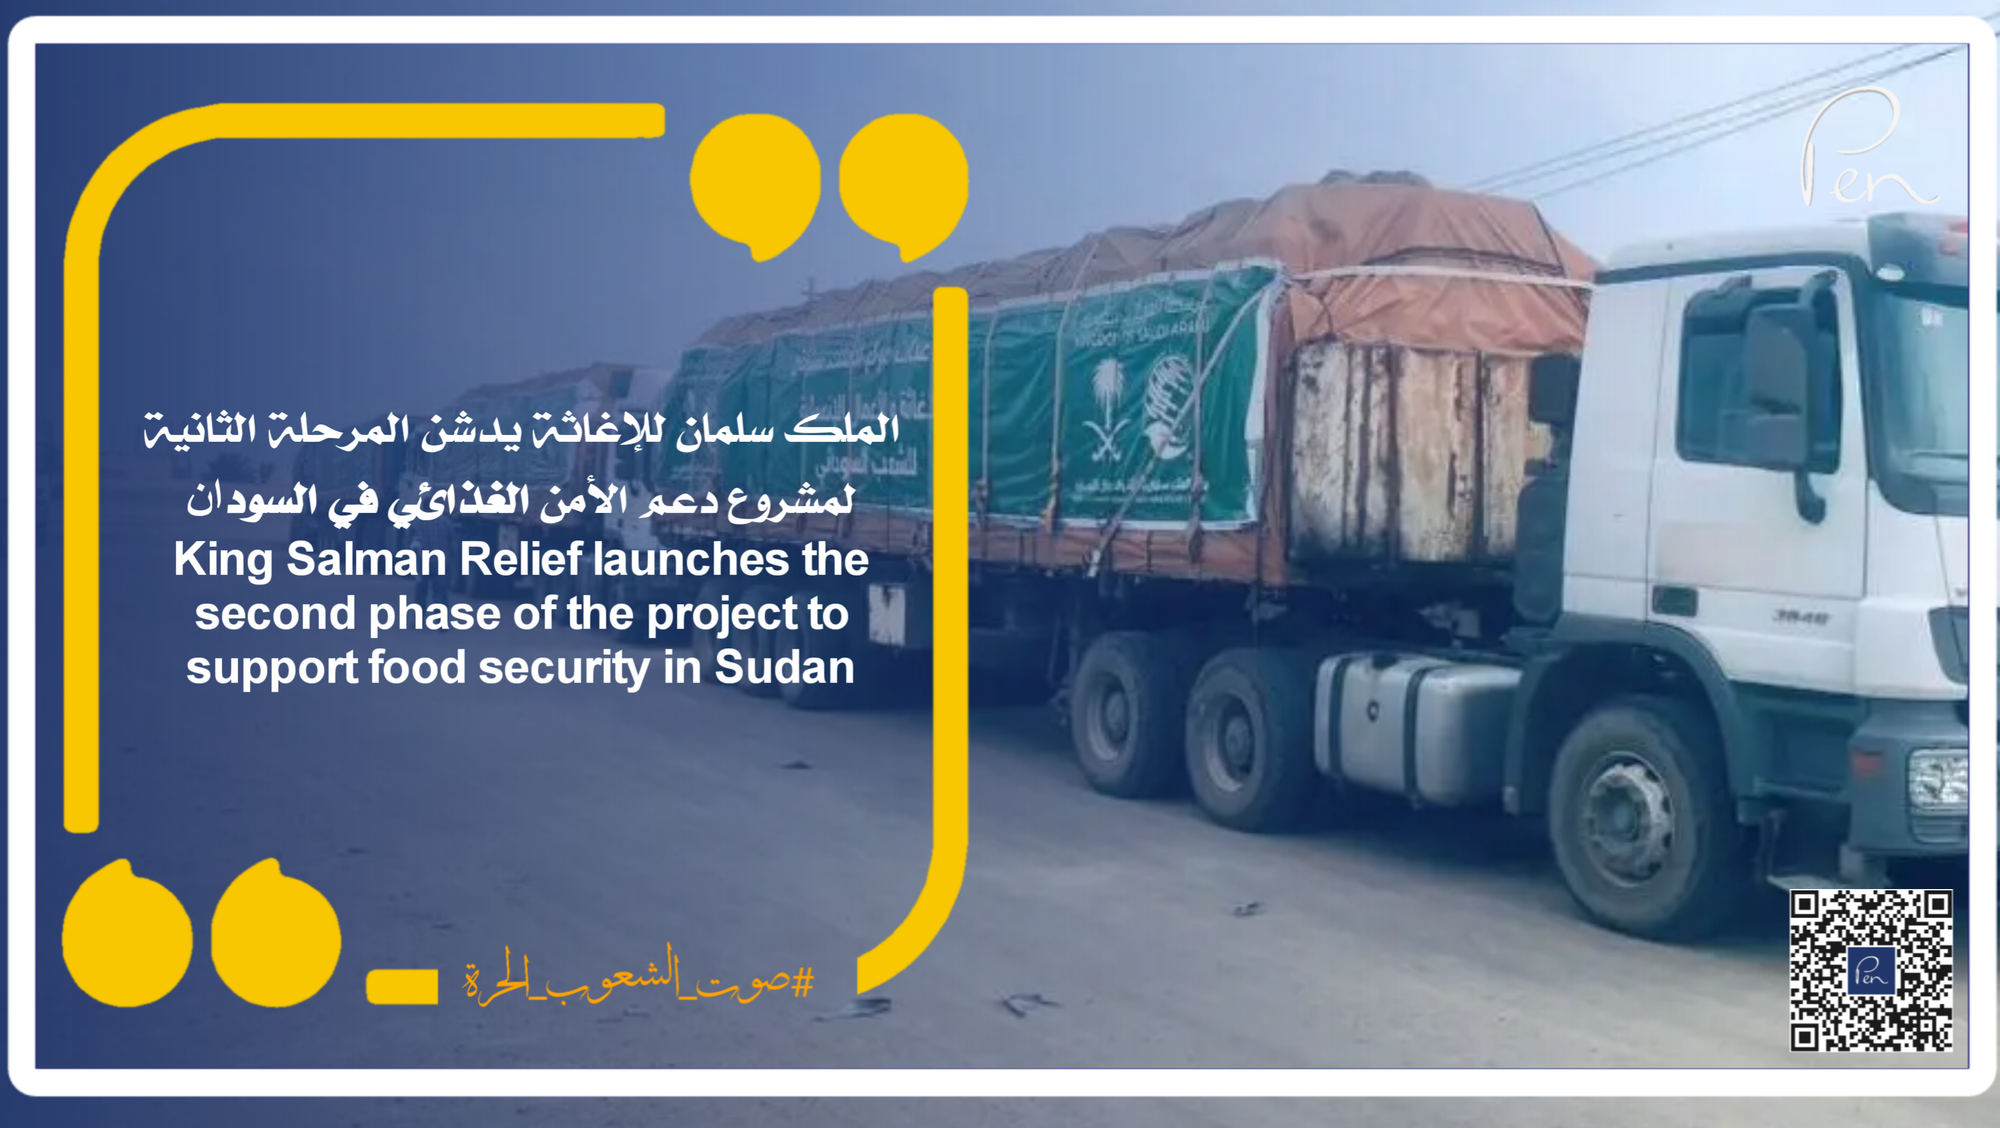 الملك سلمان للإغاثة يدشن المرحلة الثانية لمشروع دعم الأمن الغذائي في السودان